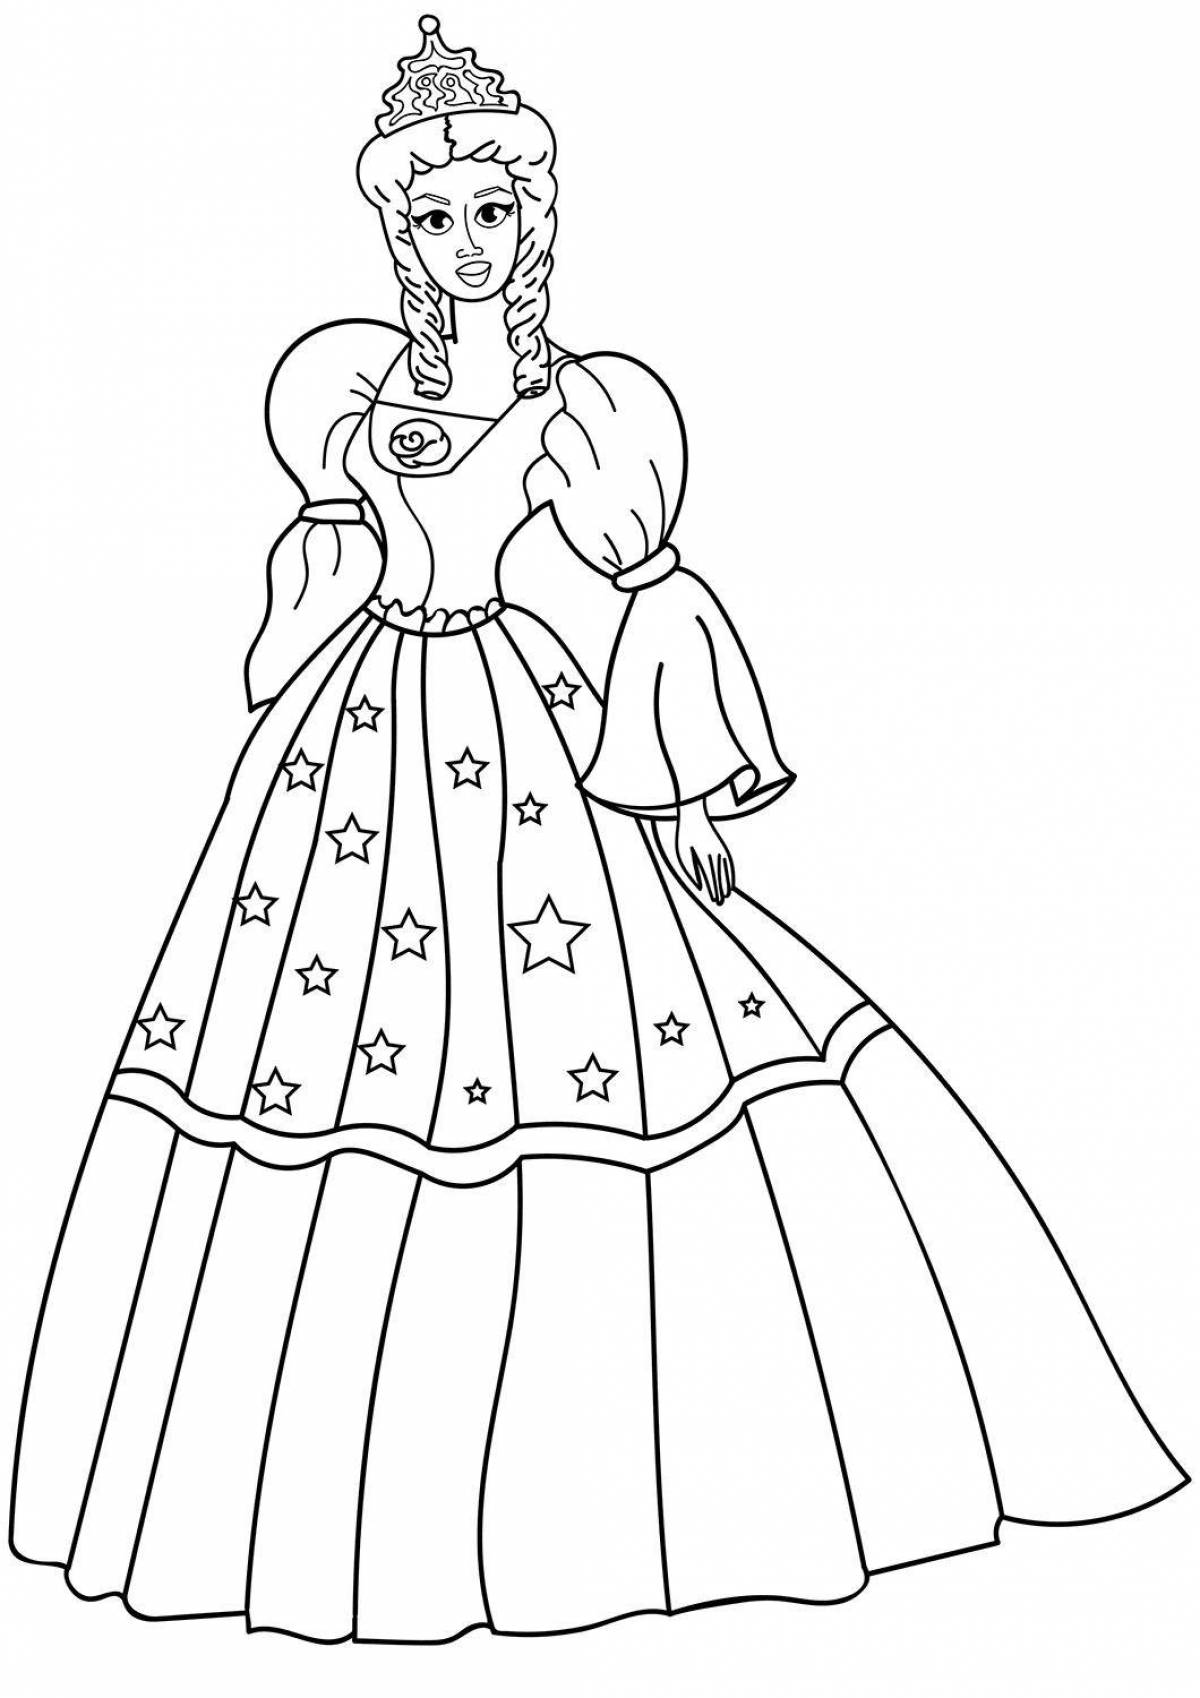 Платье принцессы раскраска для детей